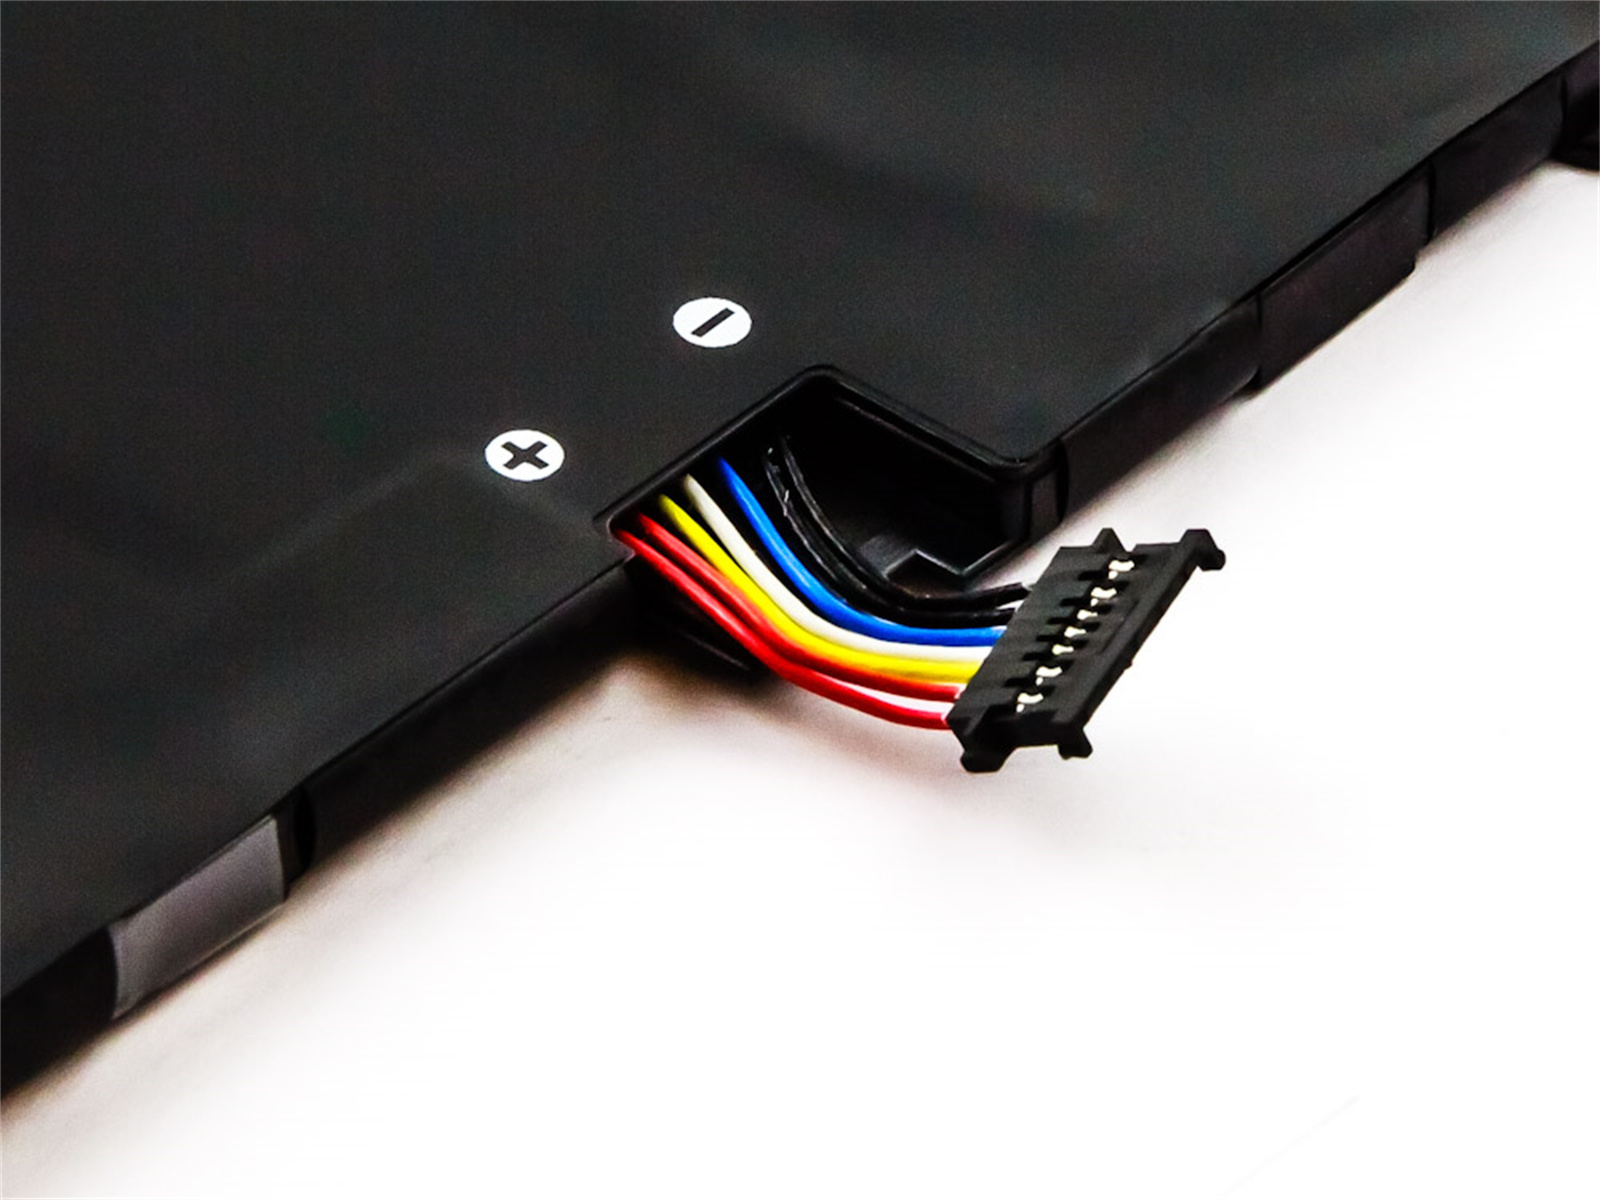 AGI Akku kompatibel mit Li-Pol, (20LD000SCD 15.36 3500 ThinkPad Li-Pol Yoga Notebookakku, 2018 mAh Volt, Lenovo X1